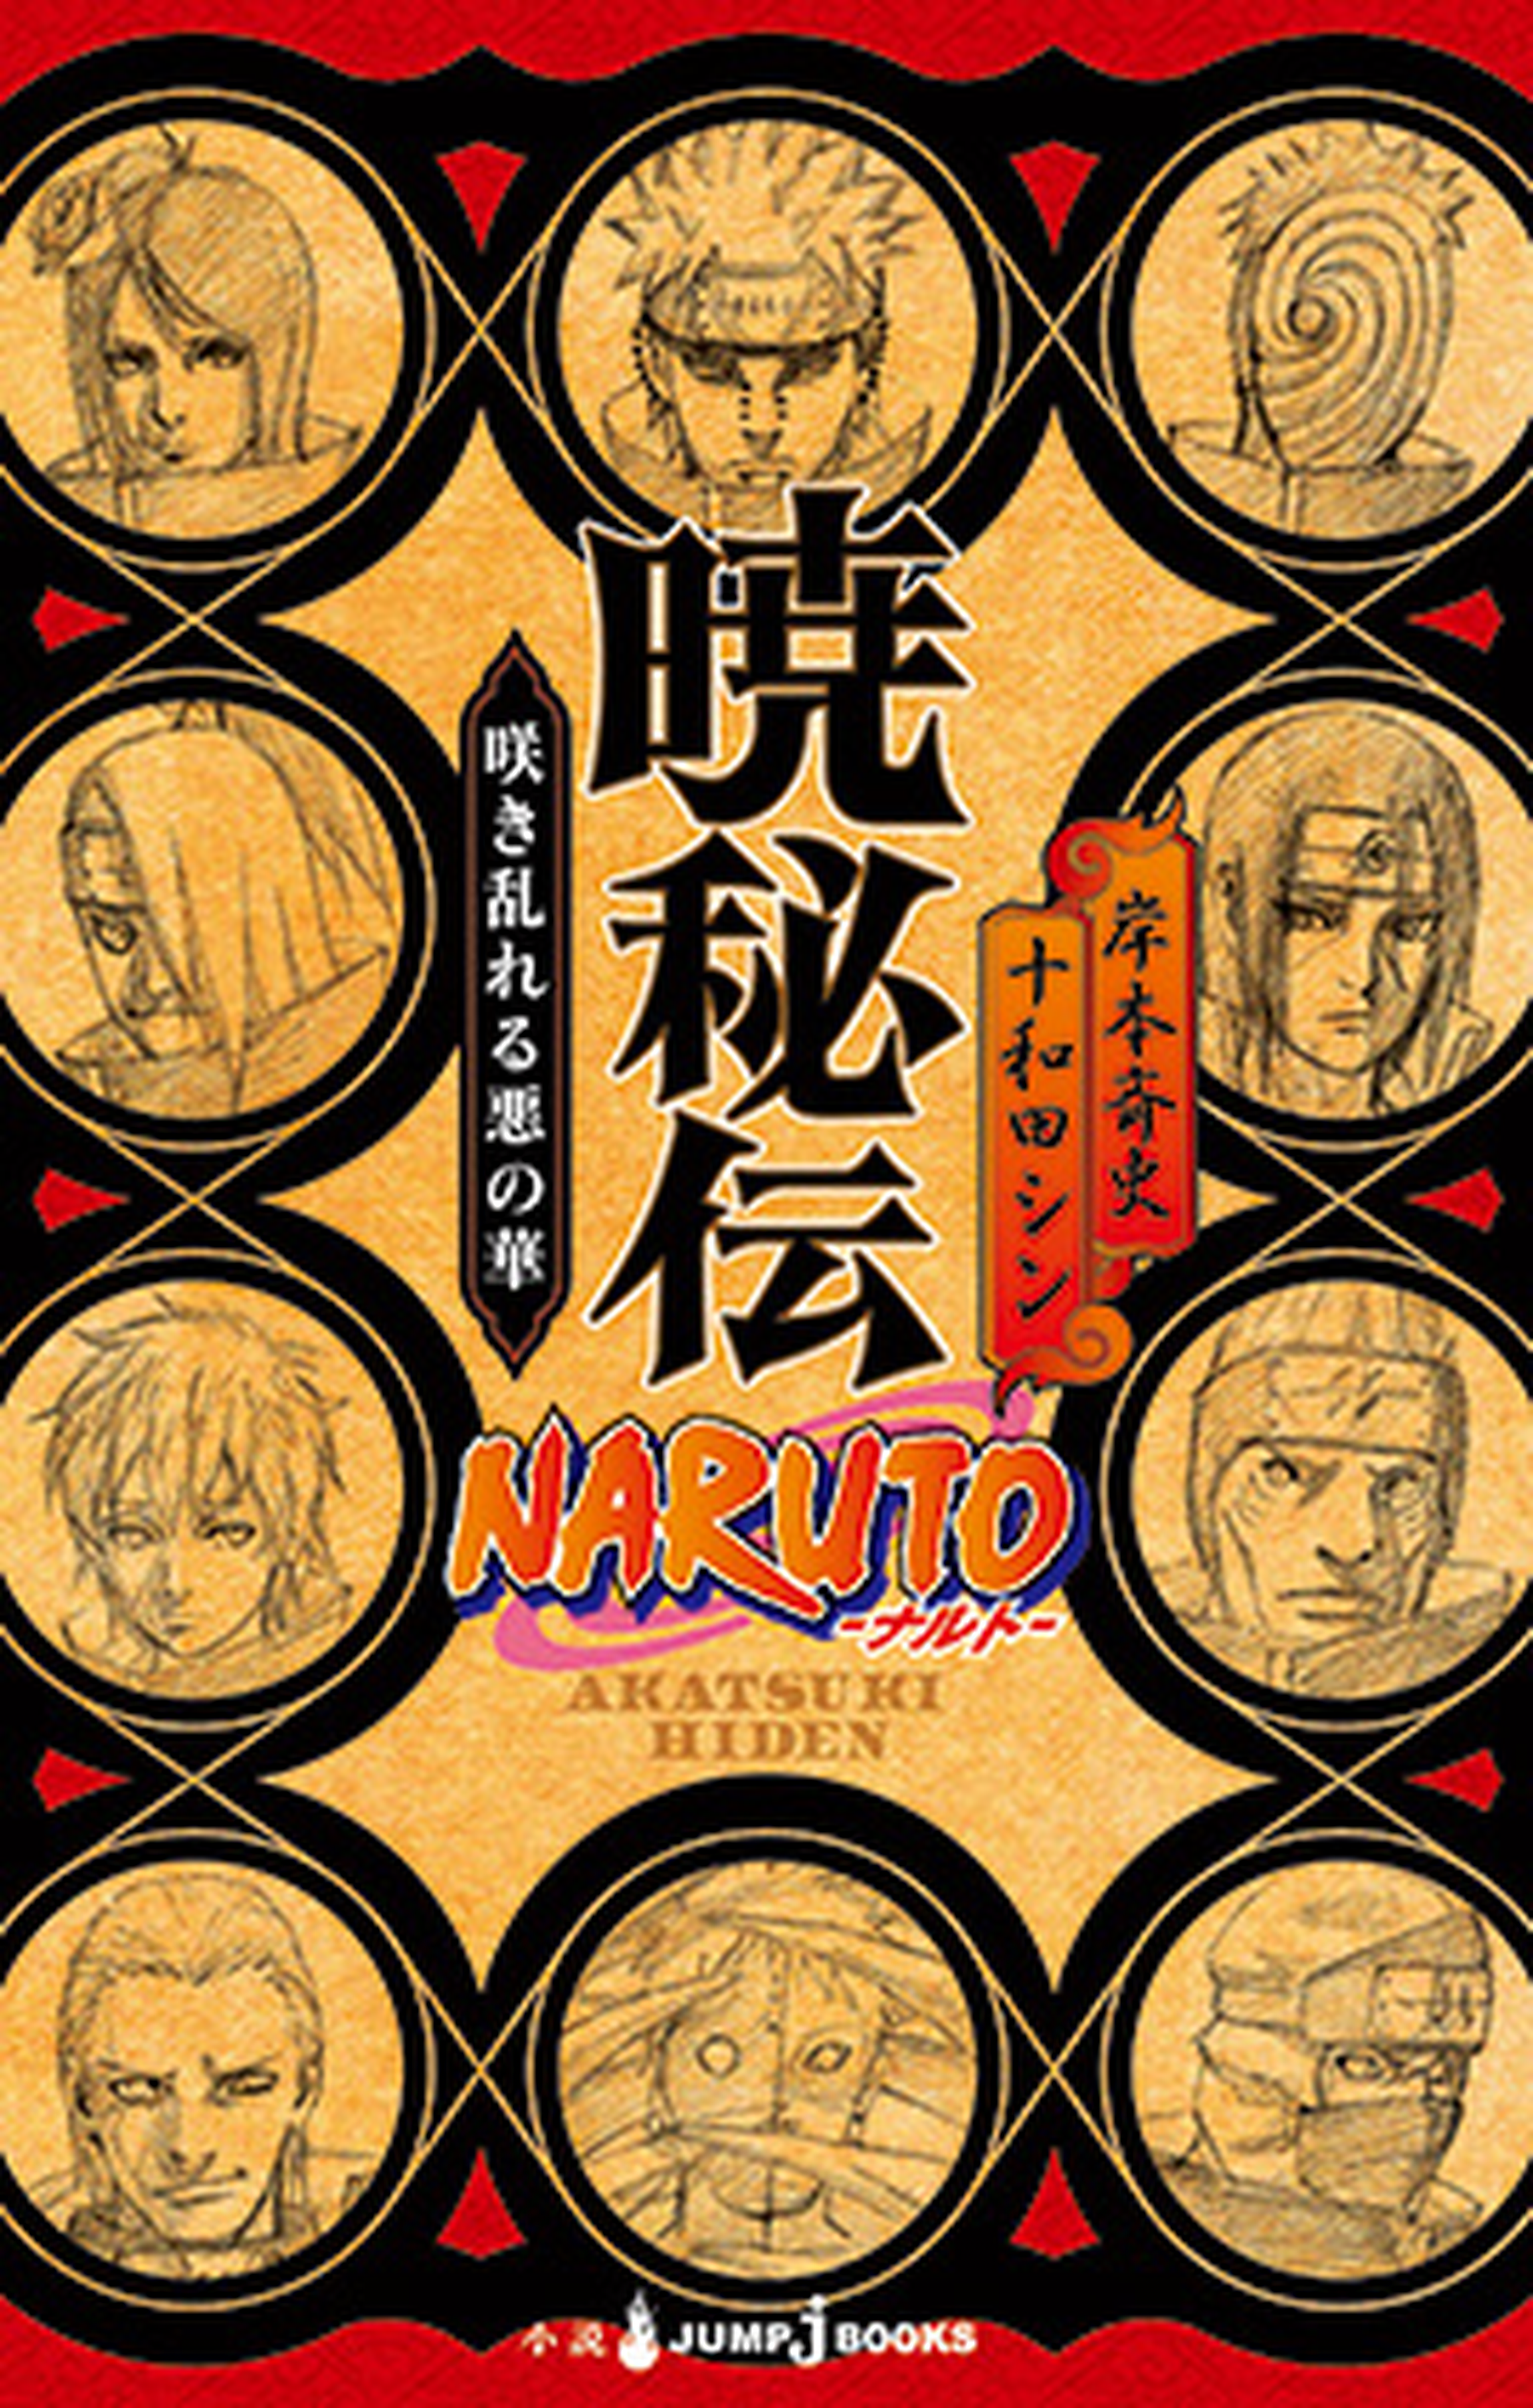 Naruto y sus spin-offs